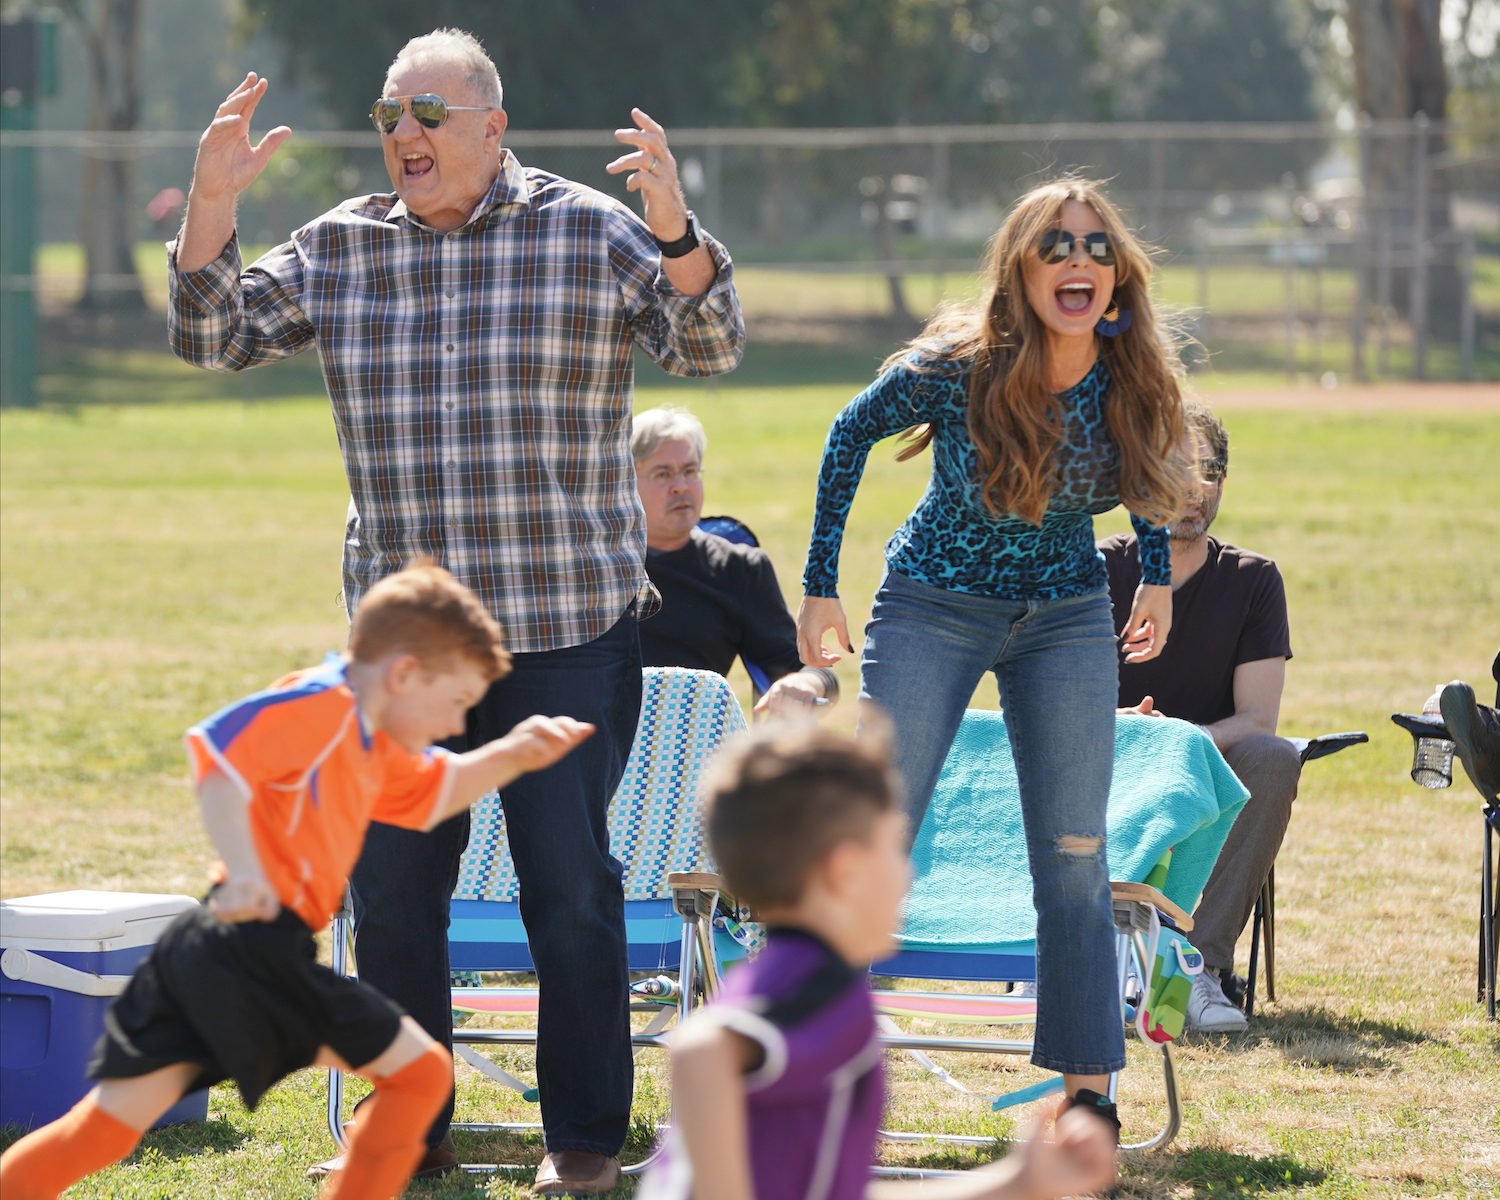 Sofia Vergara and Ed O'Neill scream at a kids soccer game